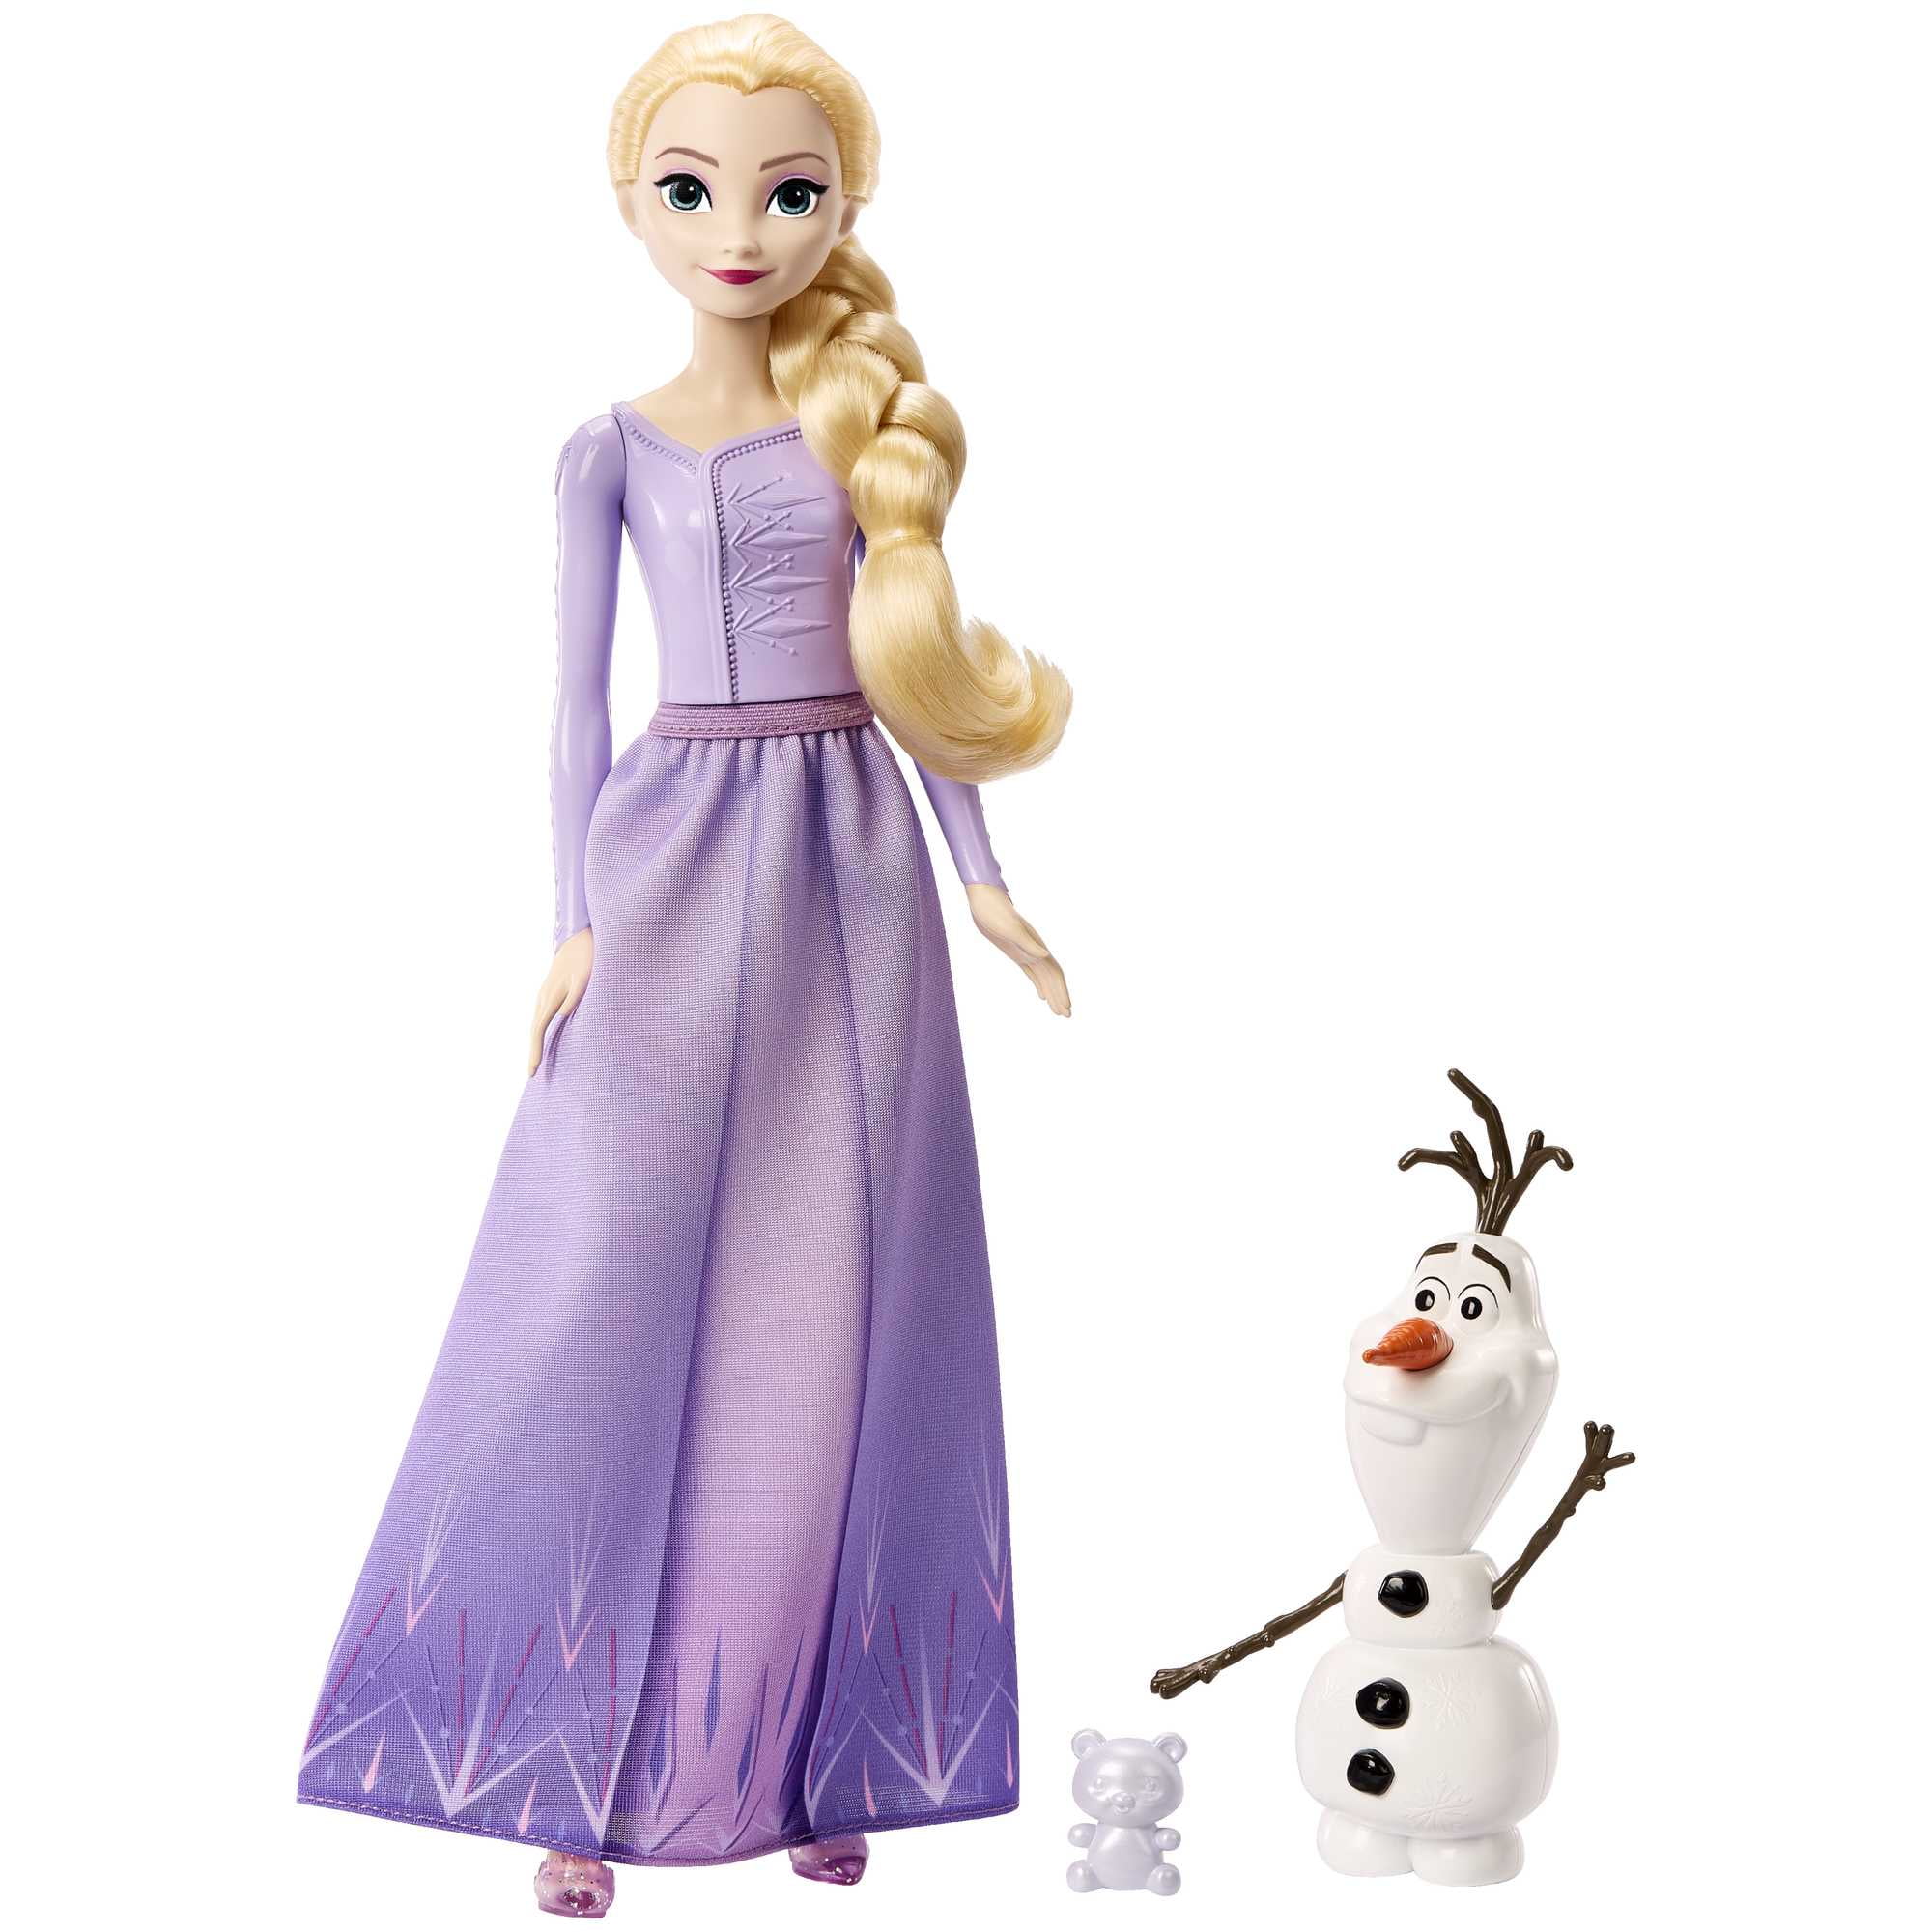 Disney Doorables Beyond the Door Elsa's Bedroom Playset, Includes 3  Exclusive Disney Frozen Figures, 7 Accessories, and 1 Key, Officially  Licensed